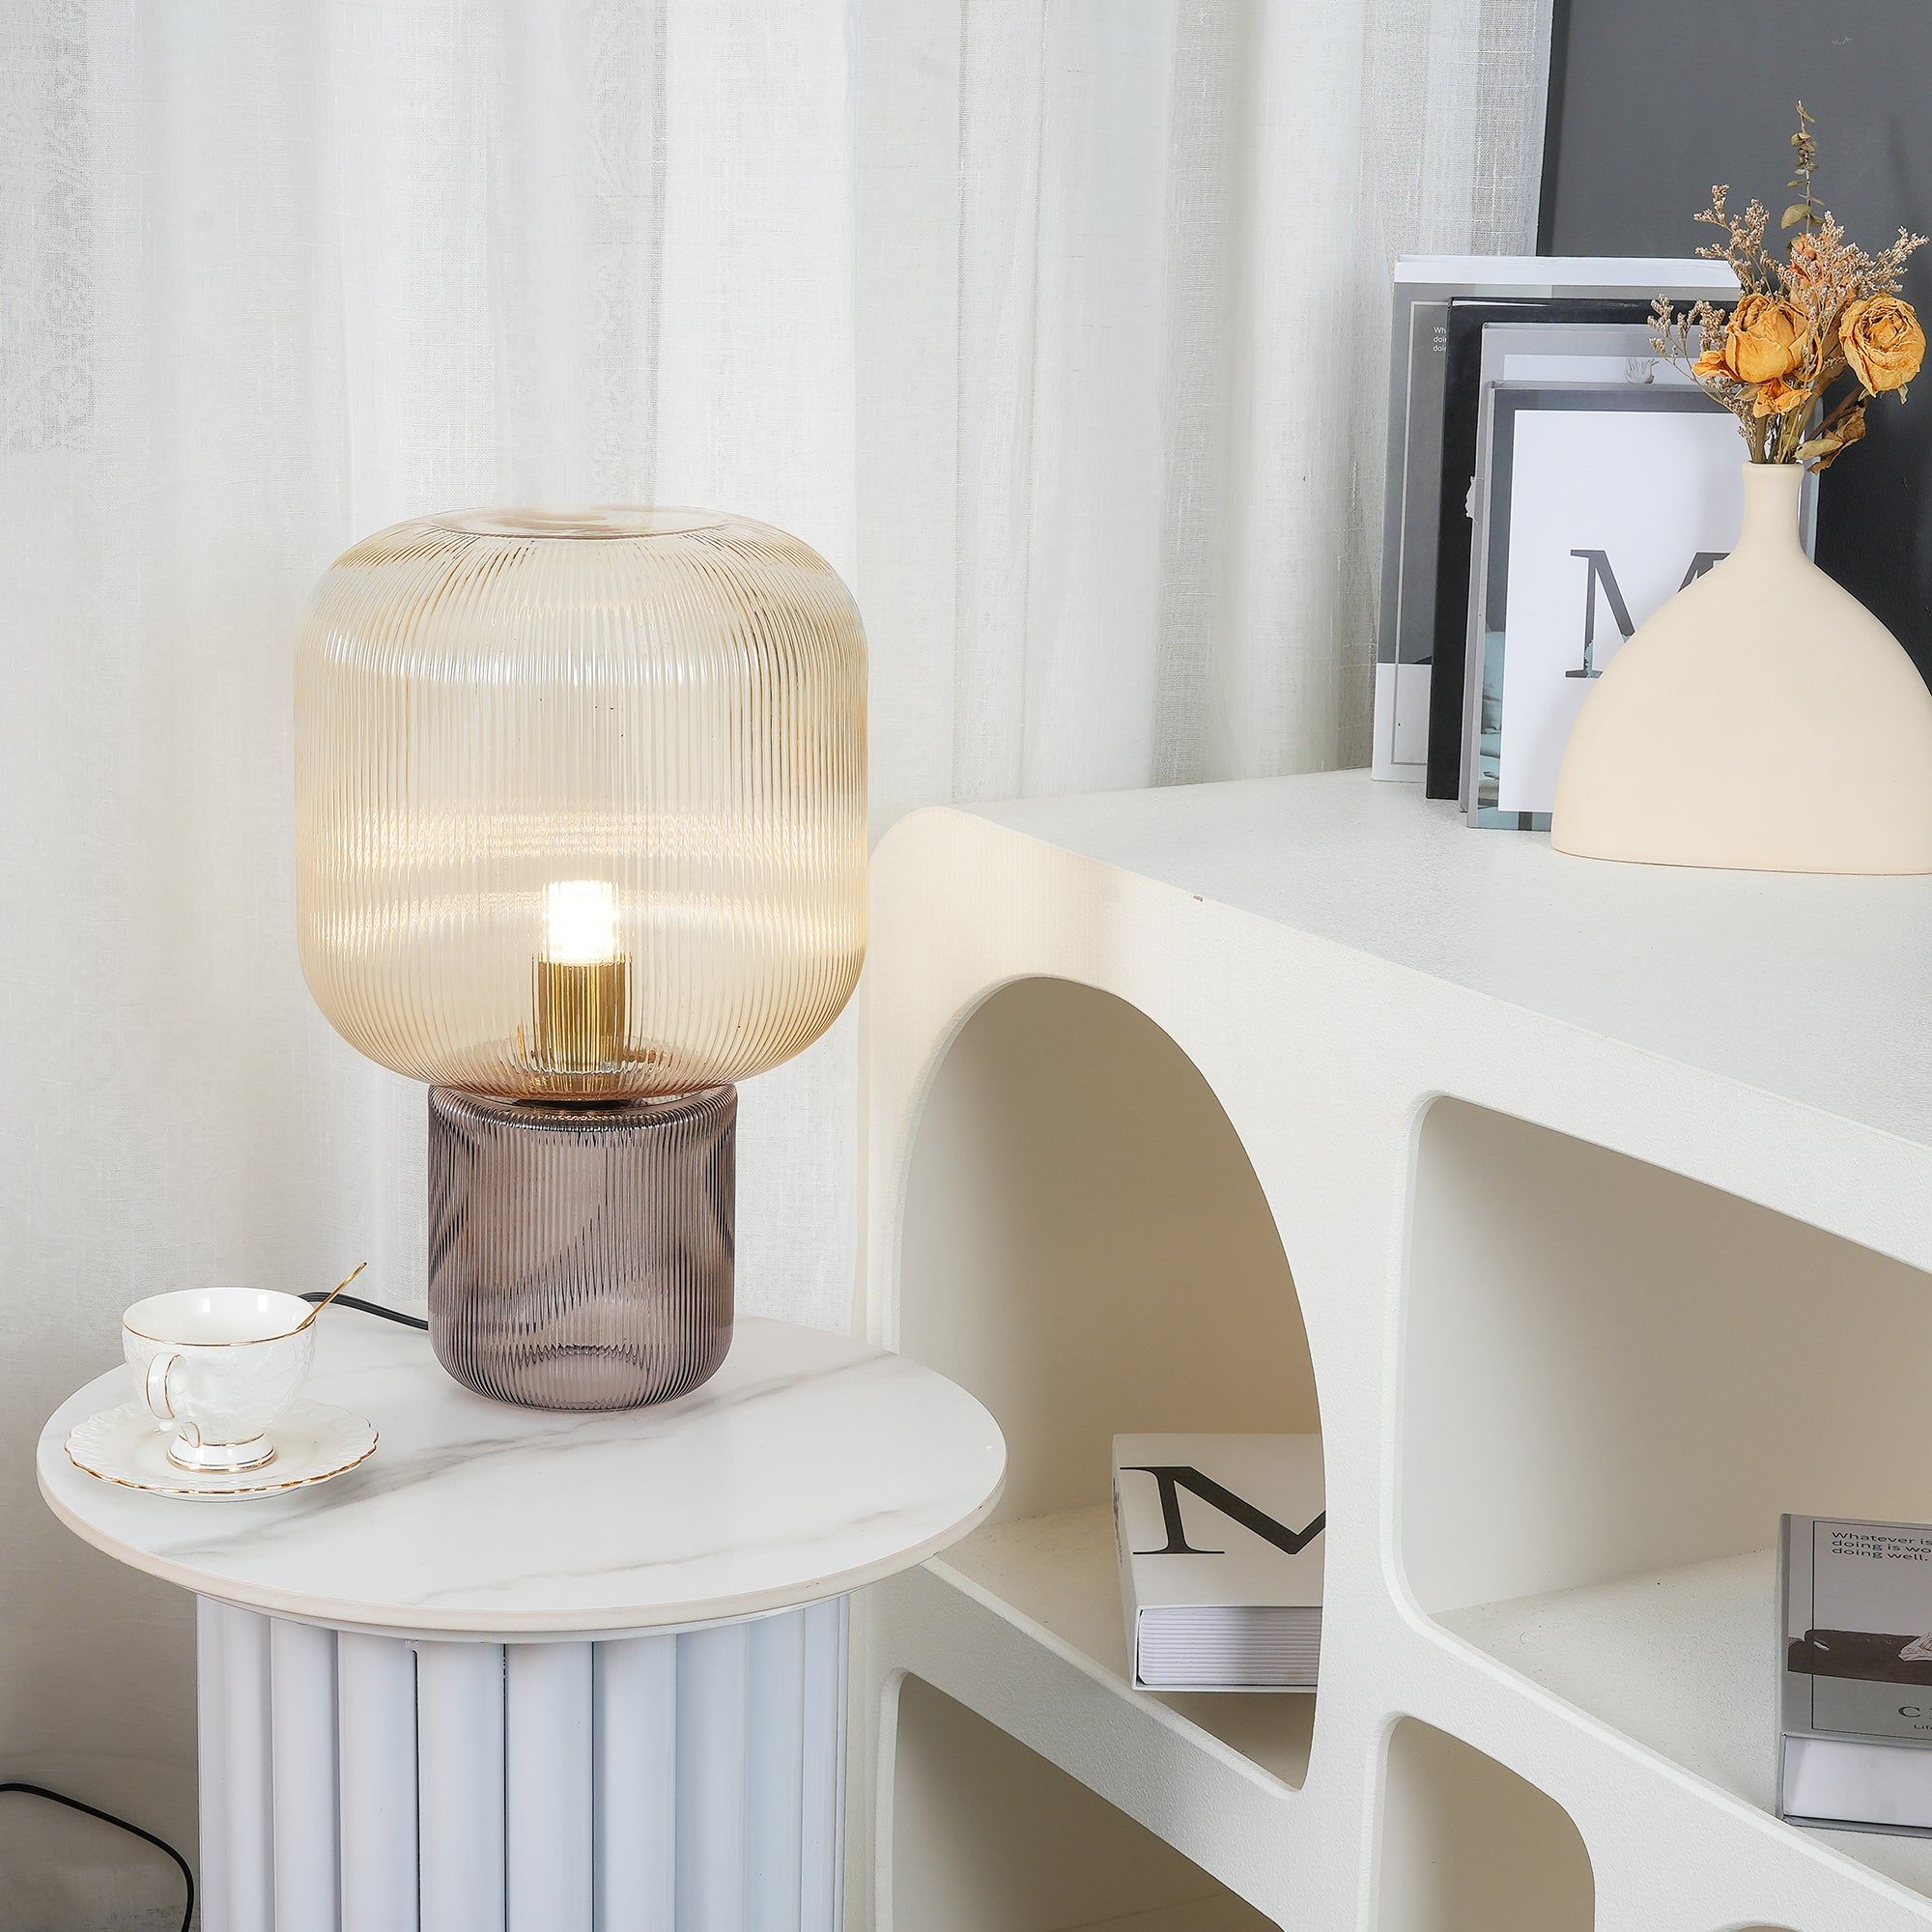 Elegant Glass Table Lamps : Elegant Glass Table Lamps Showcase Stylish Home Decor